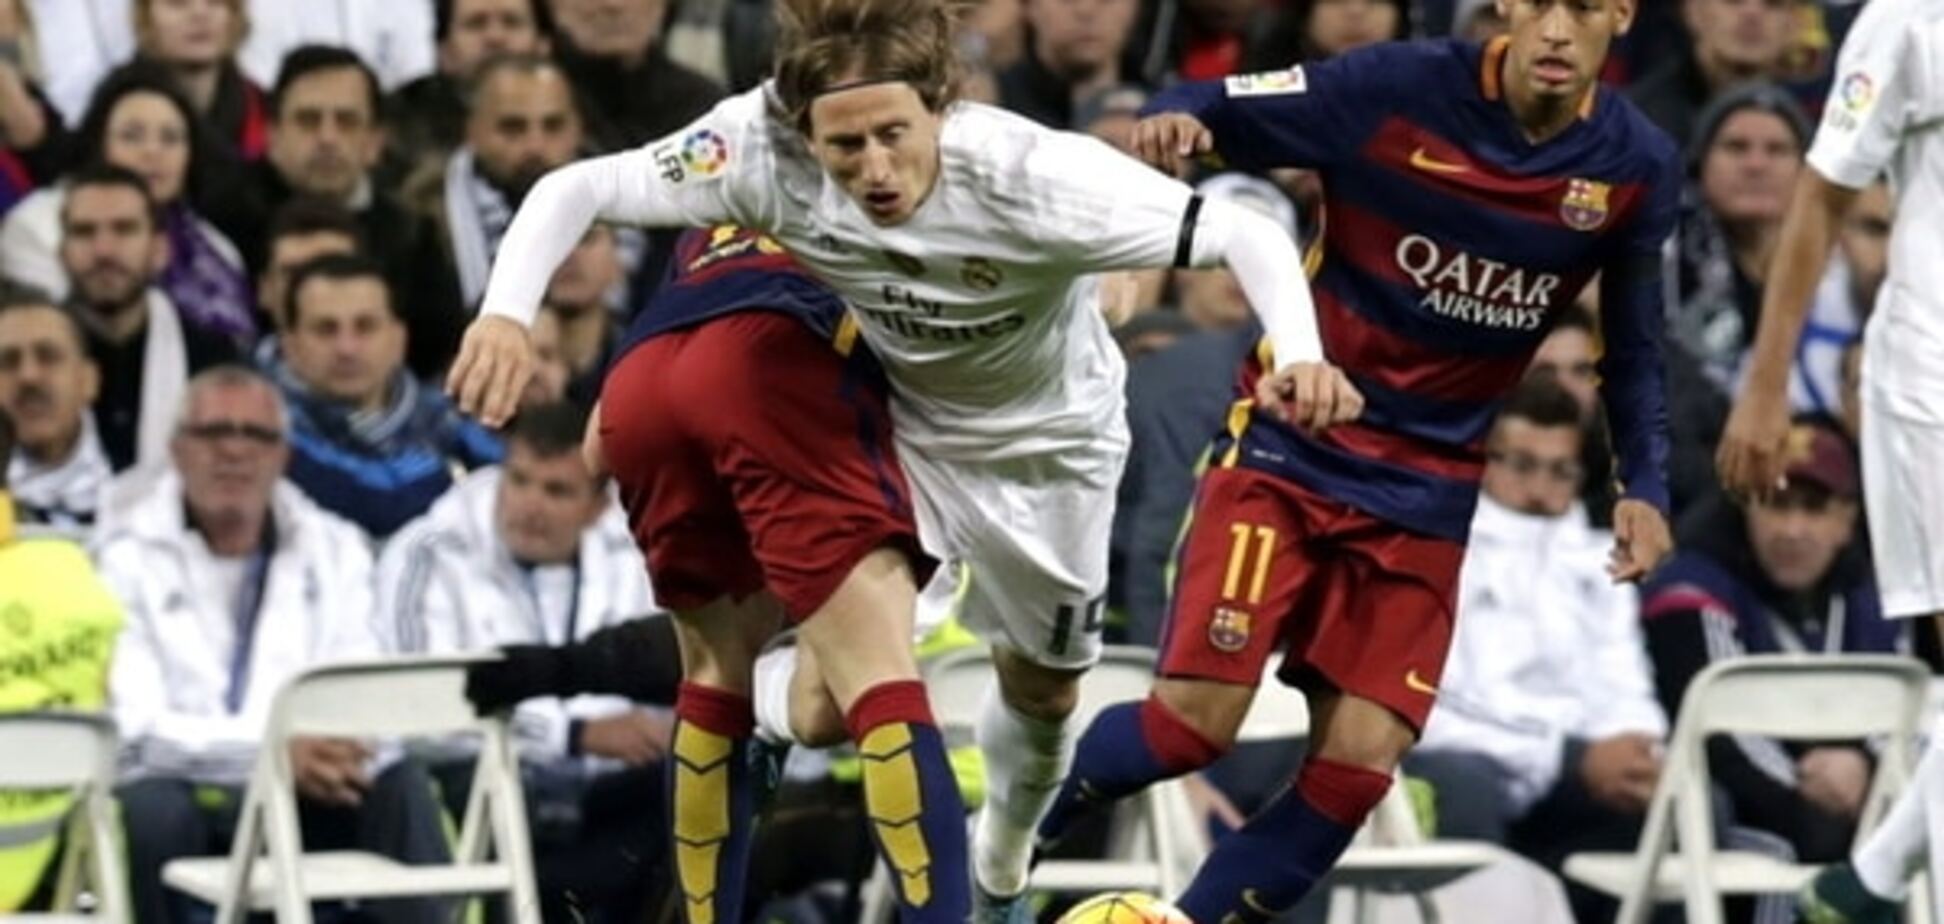 Подстава от УЕФА и сонный Роналду. Чем запомнился суперматч 'Реал' – 'Барселона'